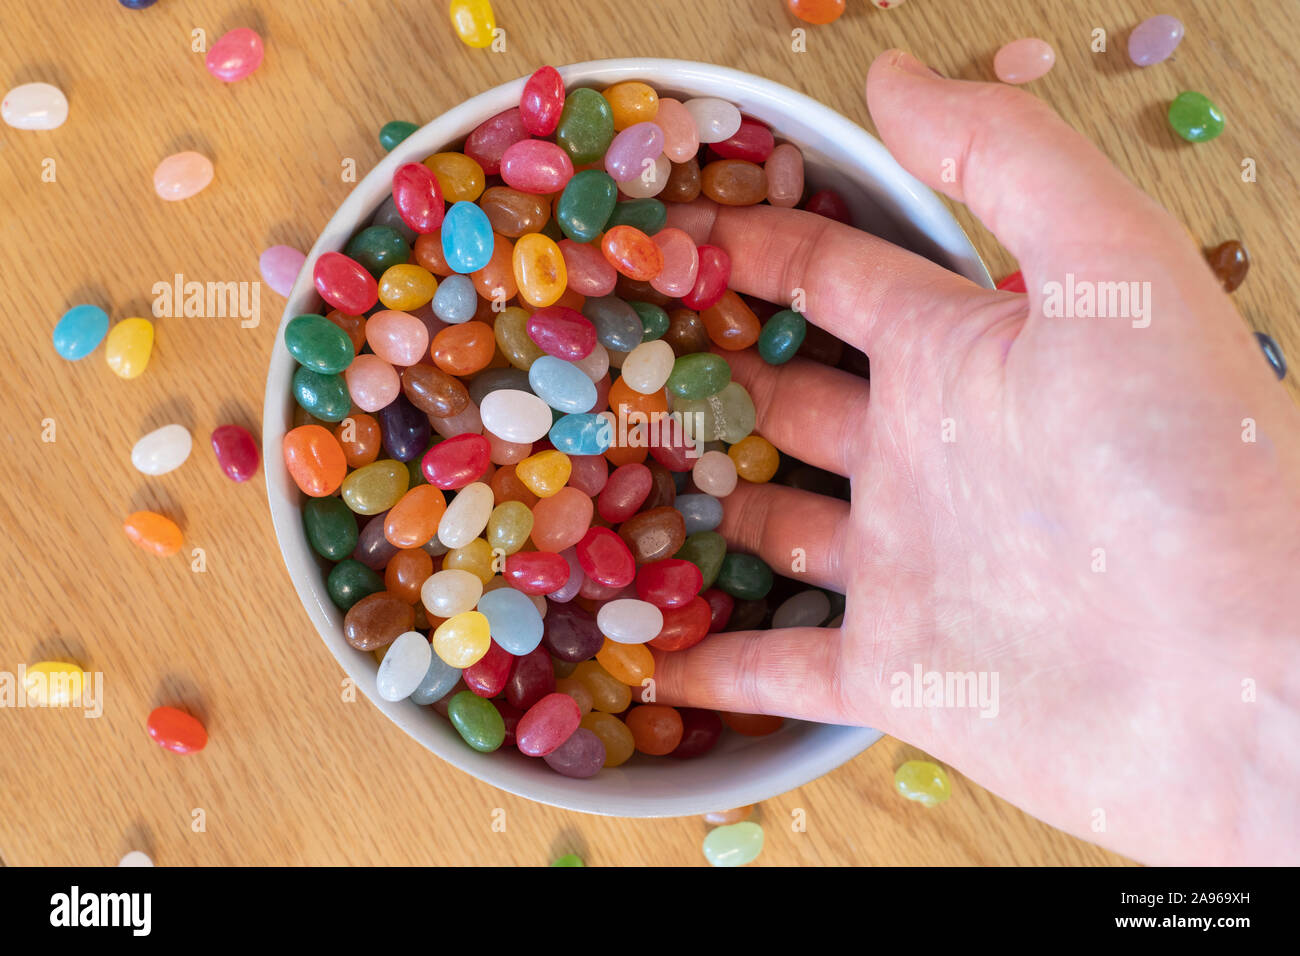 Un uomo adulto la mano scooping Jelly Beans in una ciotola piena di jellybeans. Concetto, la dipendenza da dolci, innamorate, candy, i piaceri della vita Foto Stock